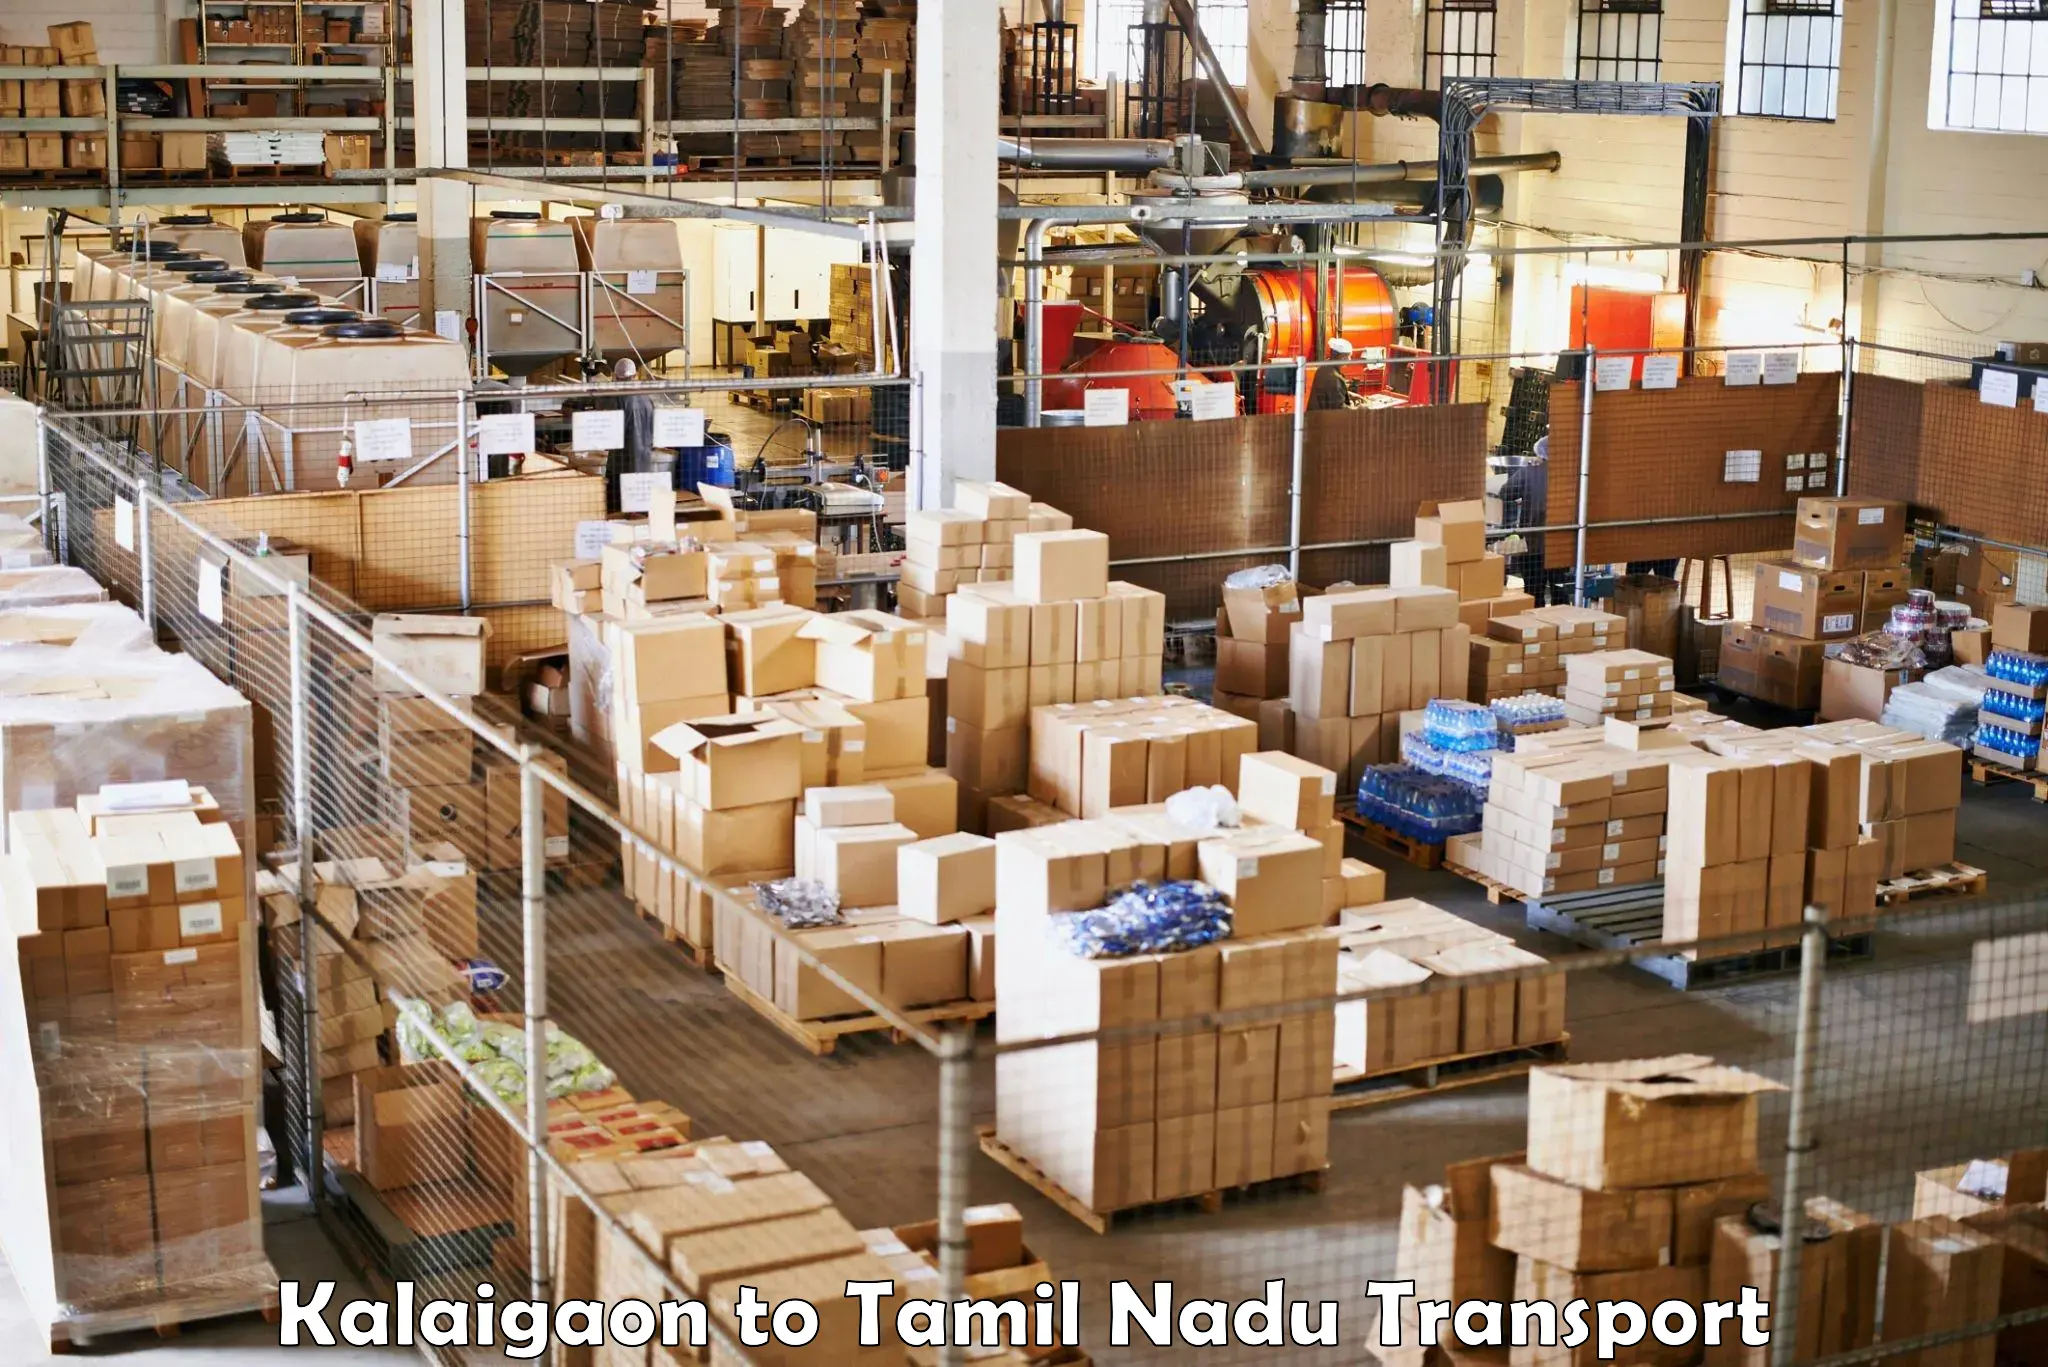 Land transport services Kalaigaon to Pennagaram